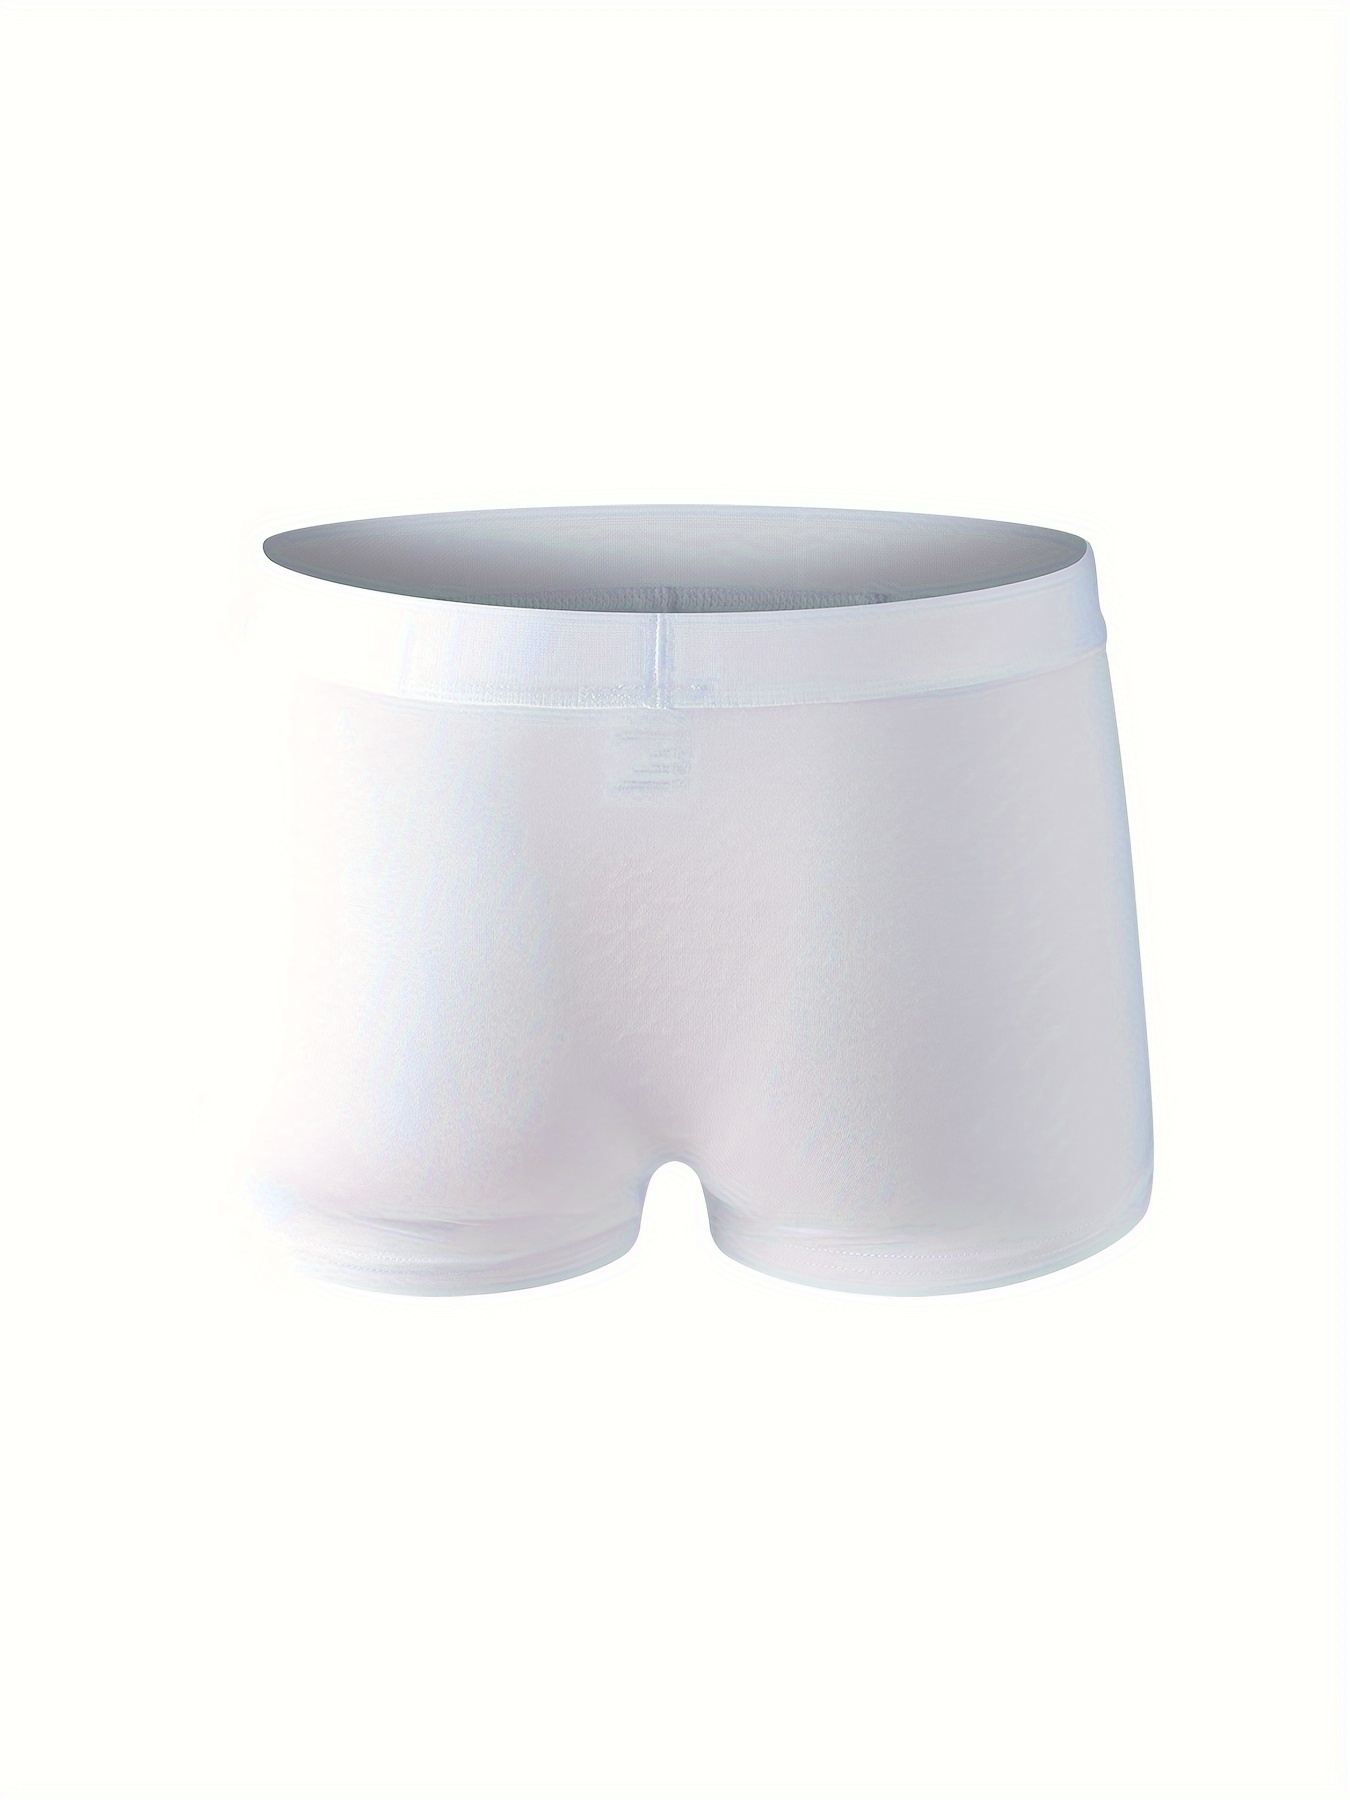 Men Underwear Modal Breathable Soft Trunk Underwear Boxer Brief